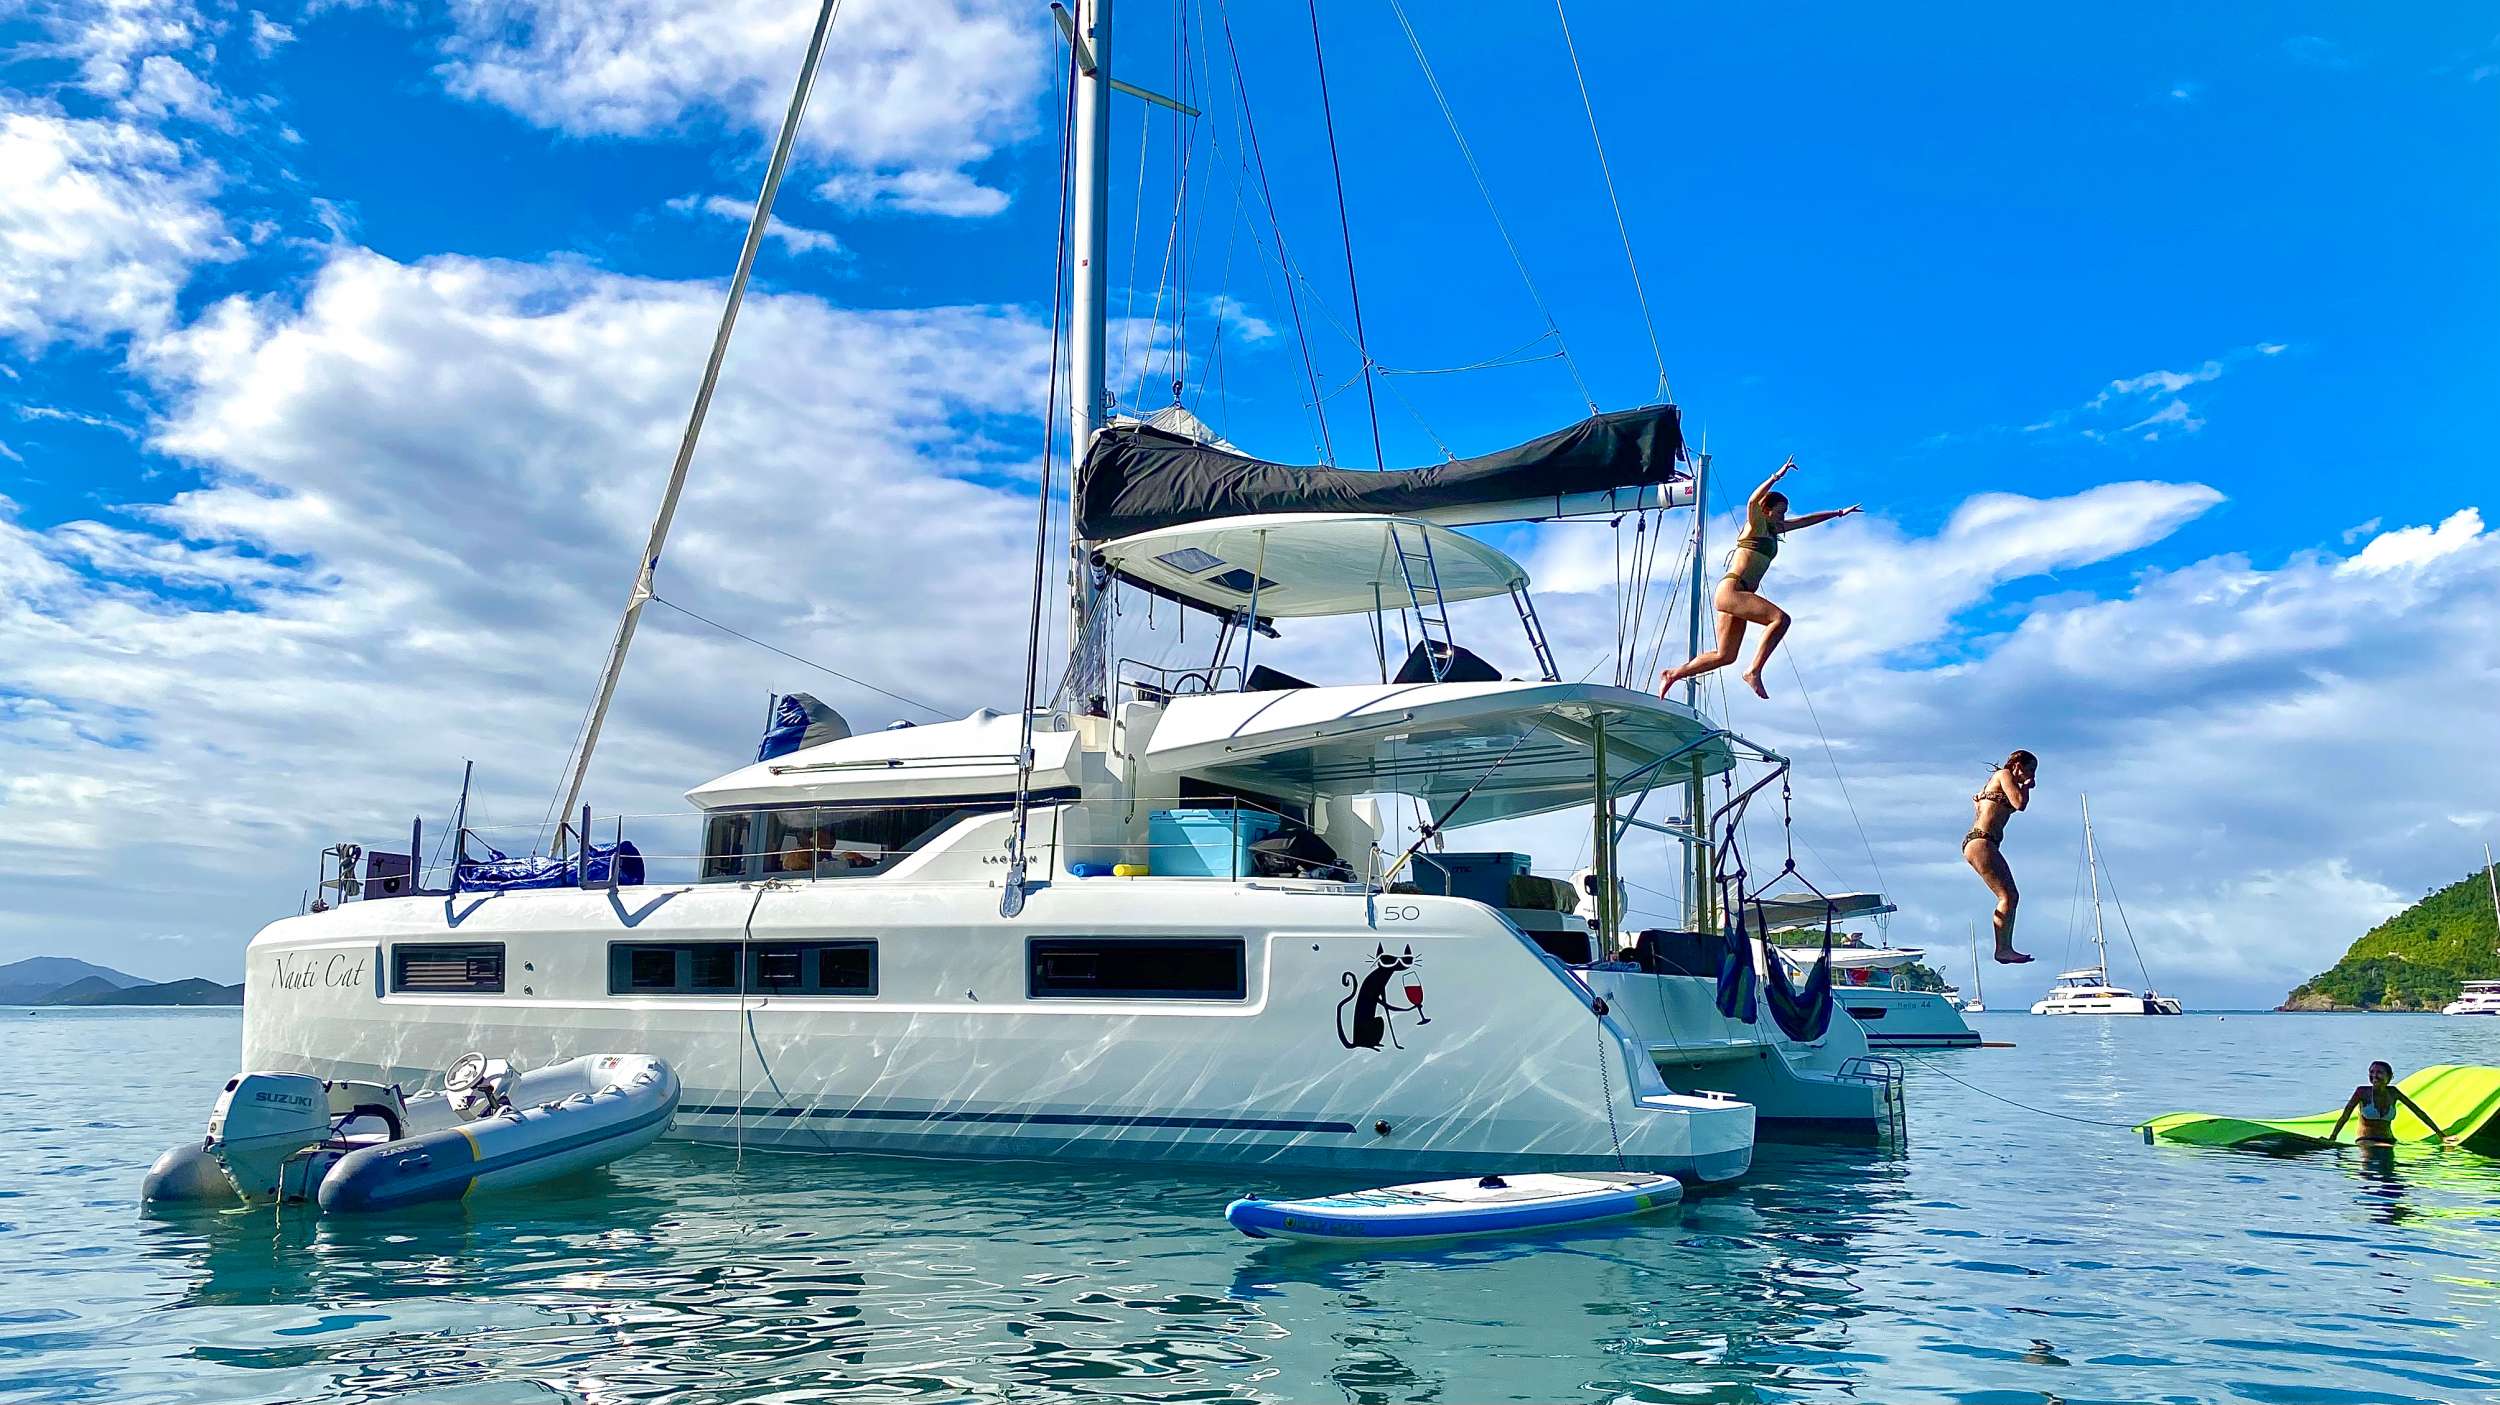 NAUTI CAT - Yacht Charter Bahamas & Boat hire in Bahamas 1